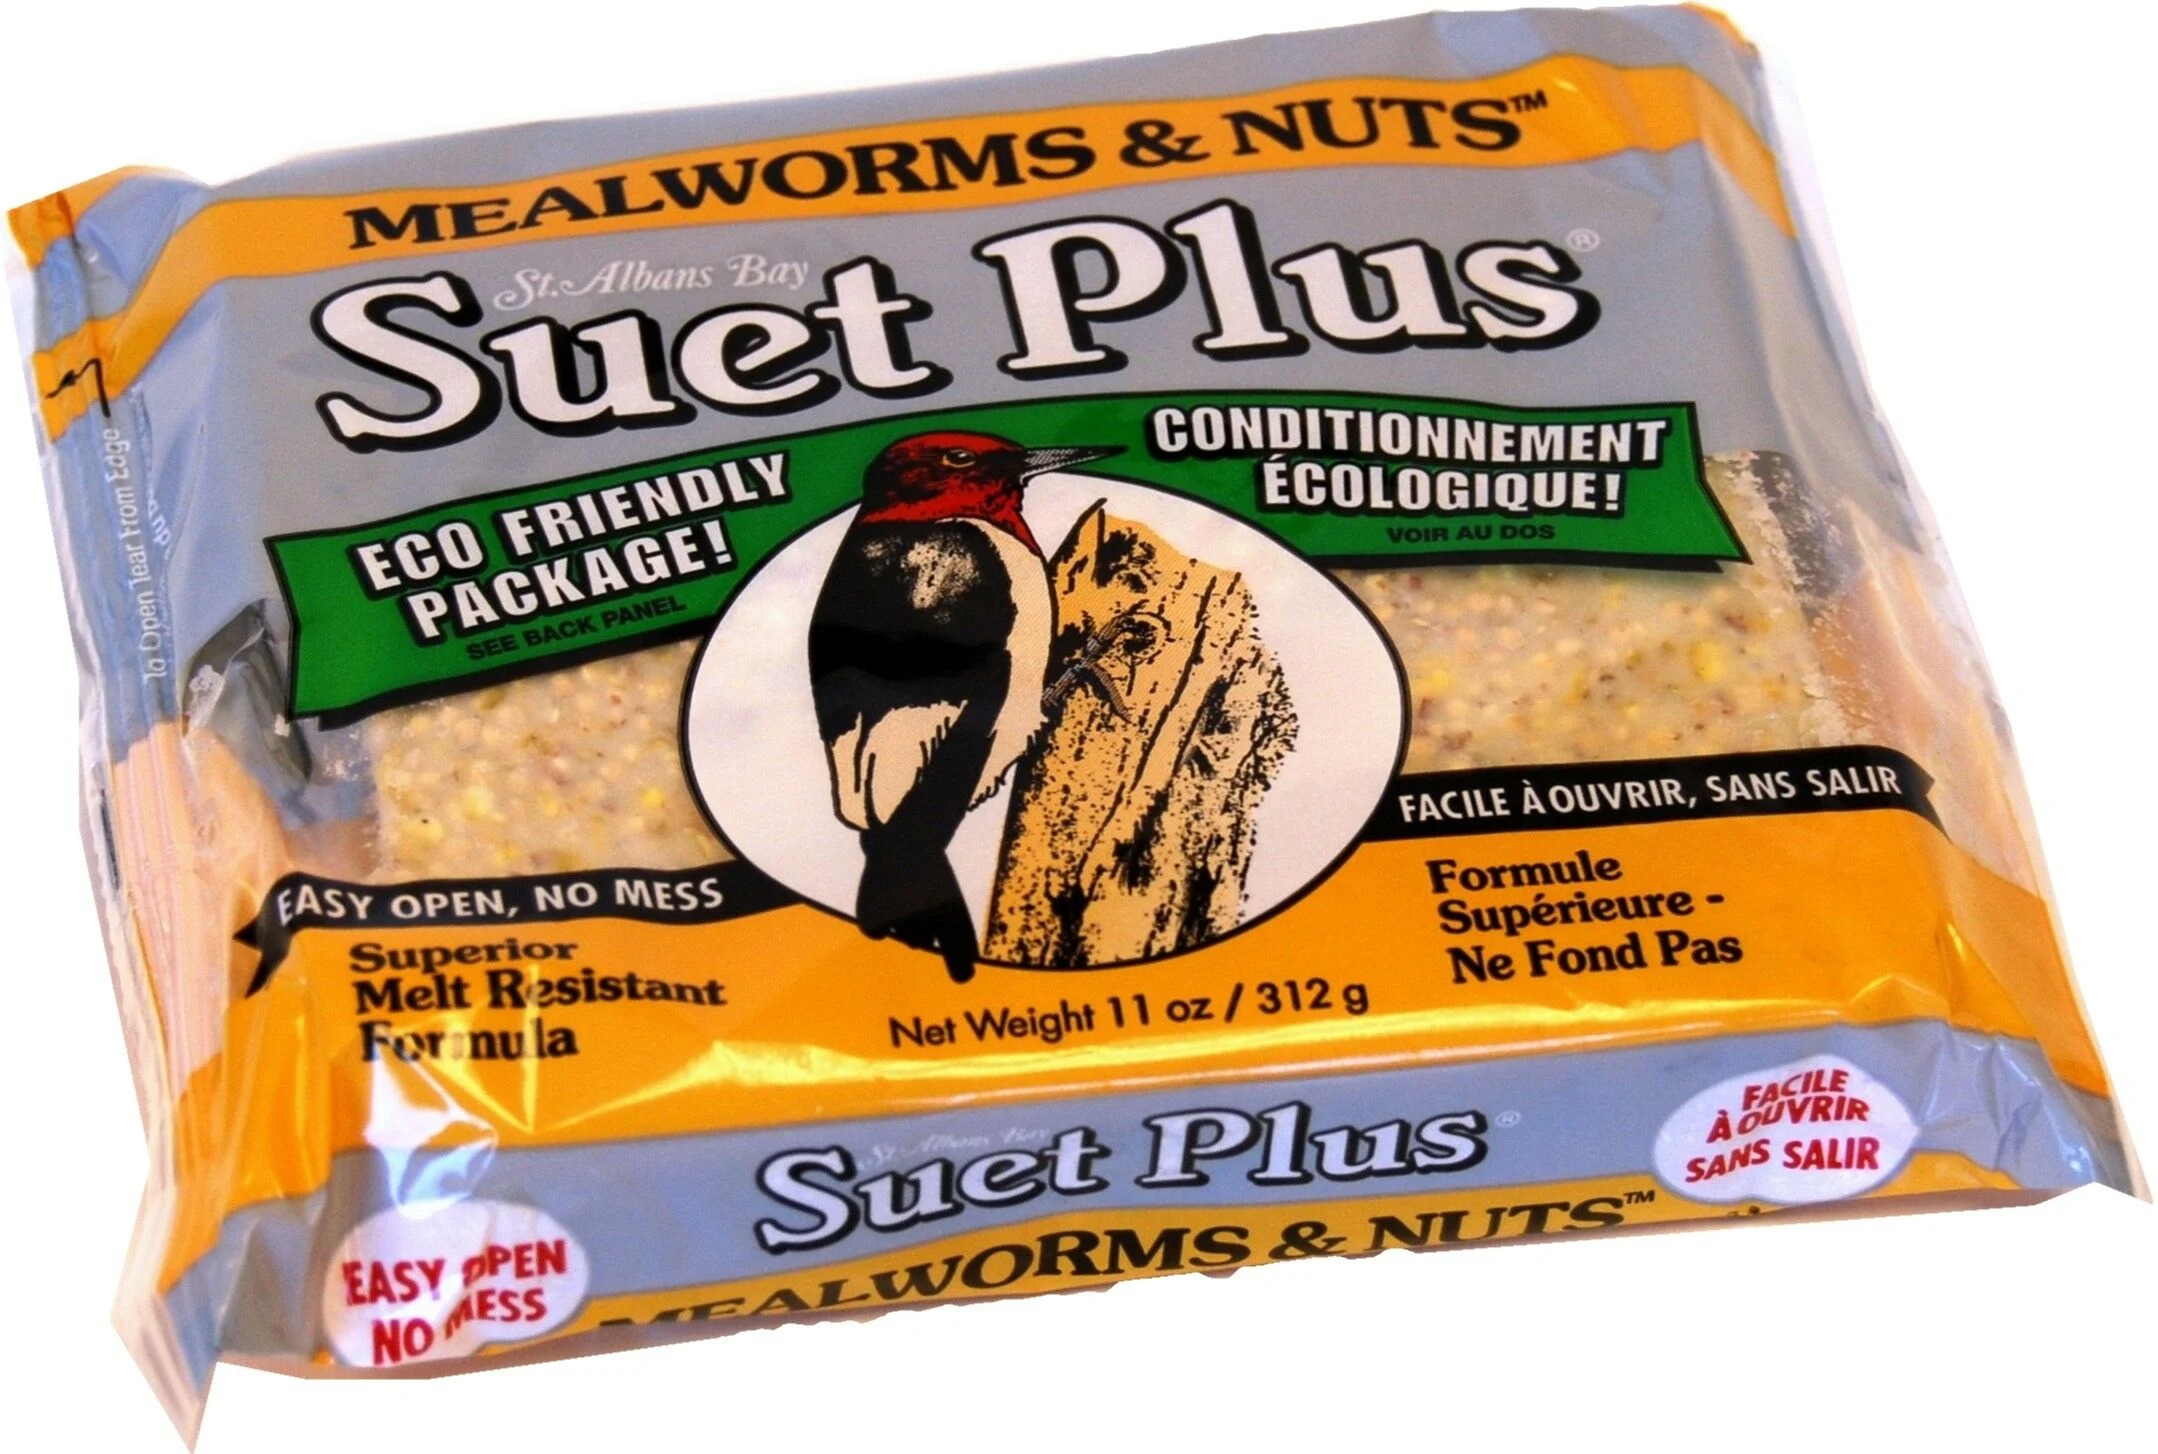 Suet Plus Mealworm/Nut